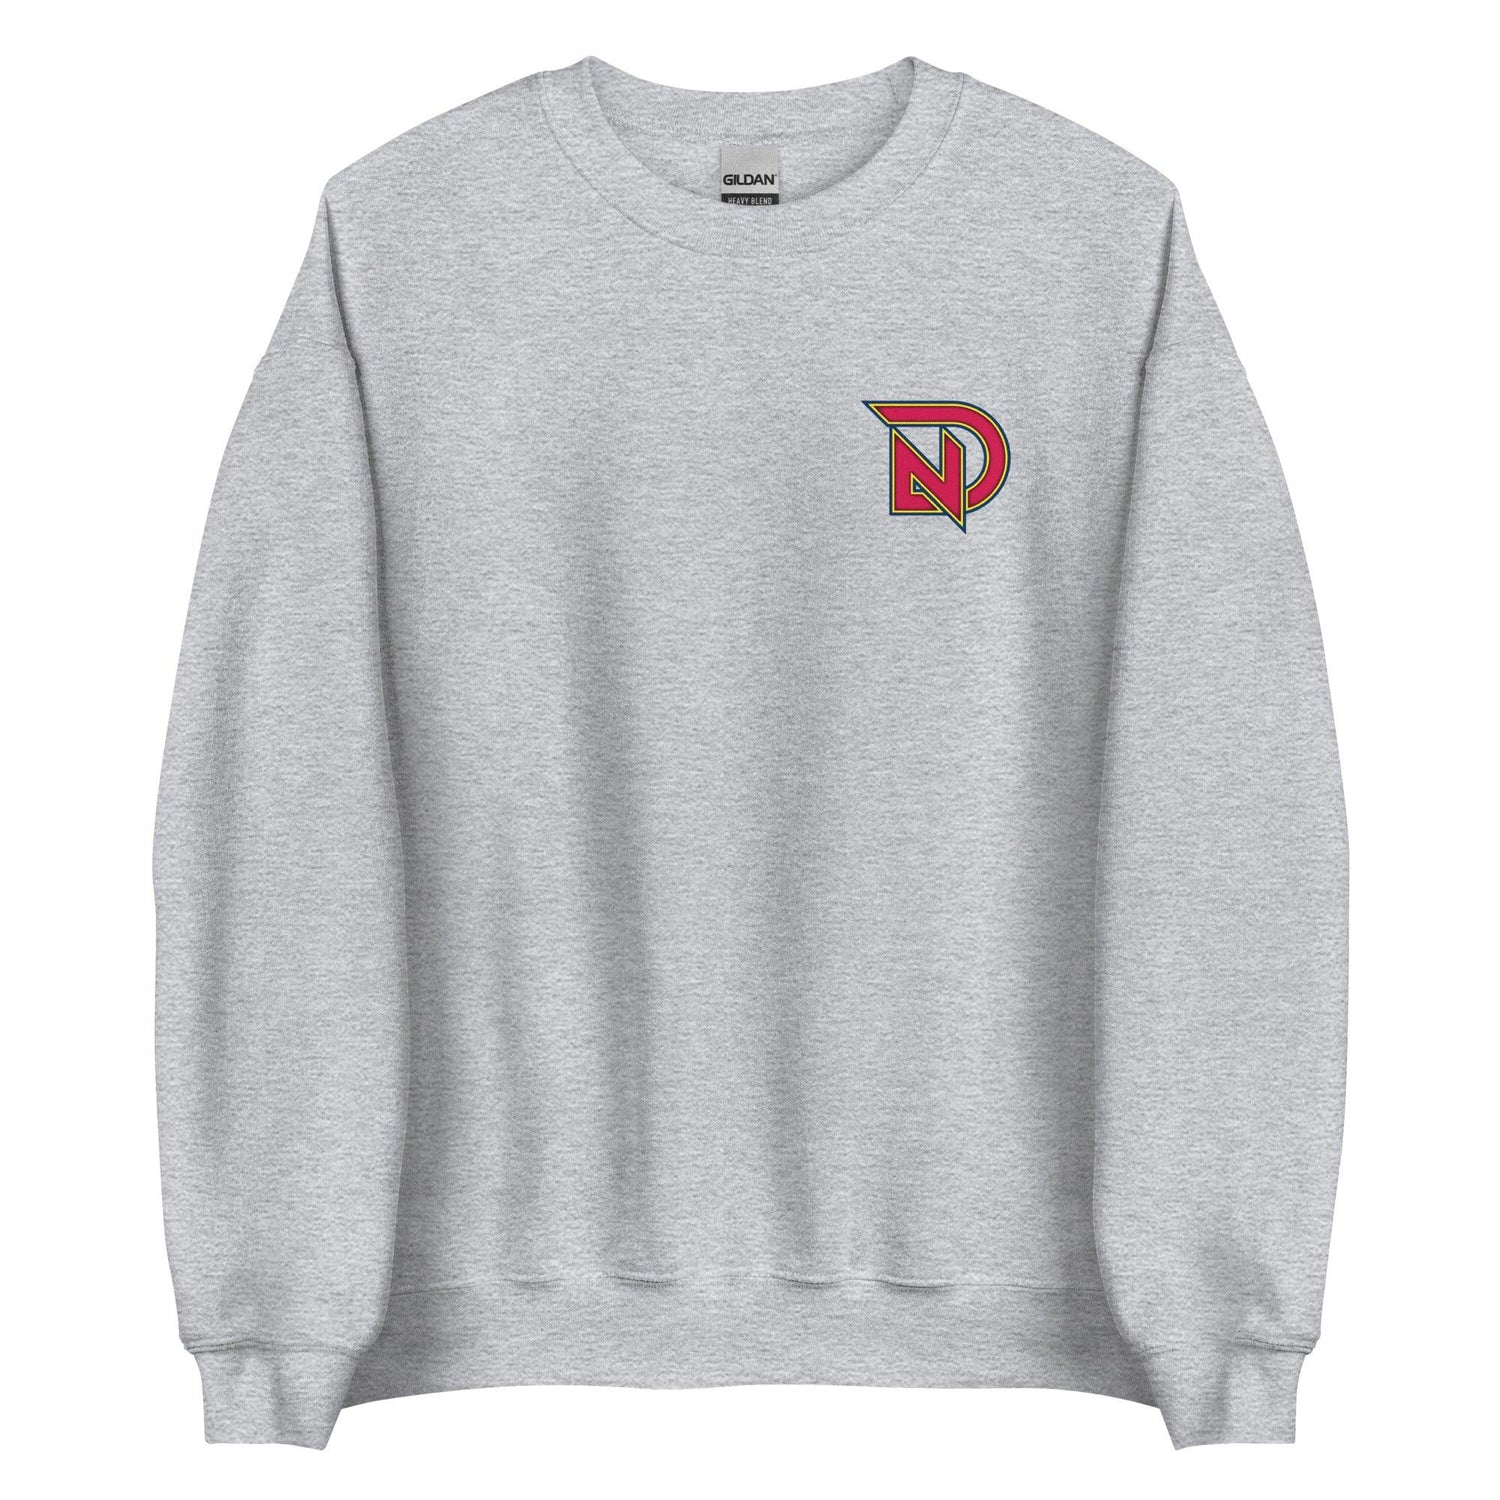 Nick Dunn "Elite" Sweatshirt - Fan Arch